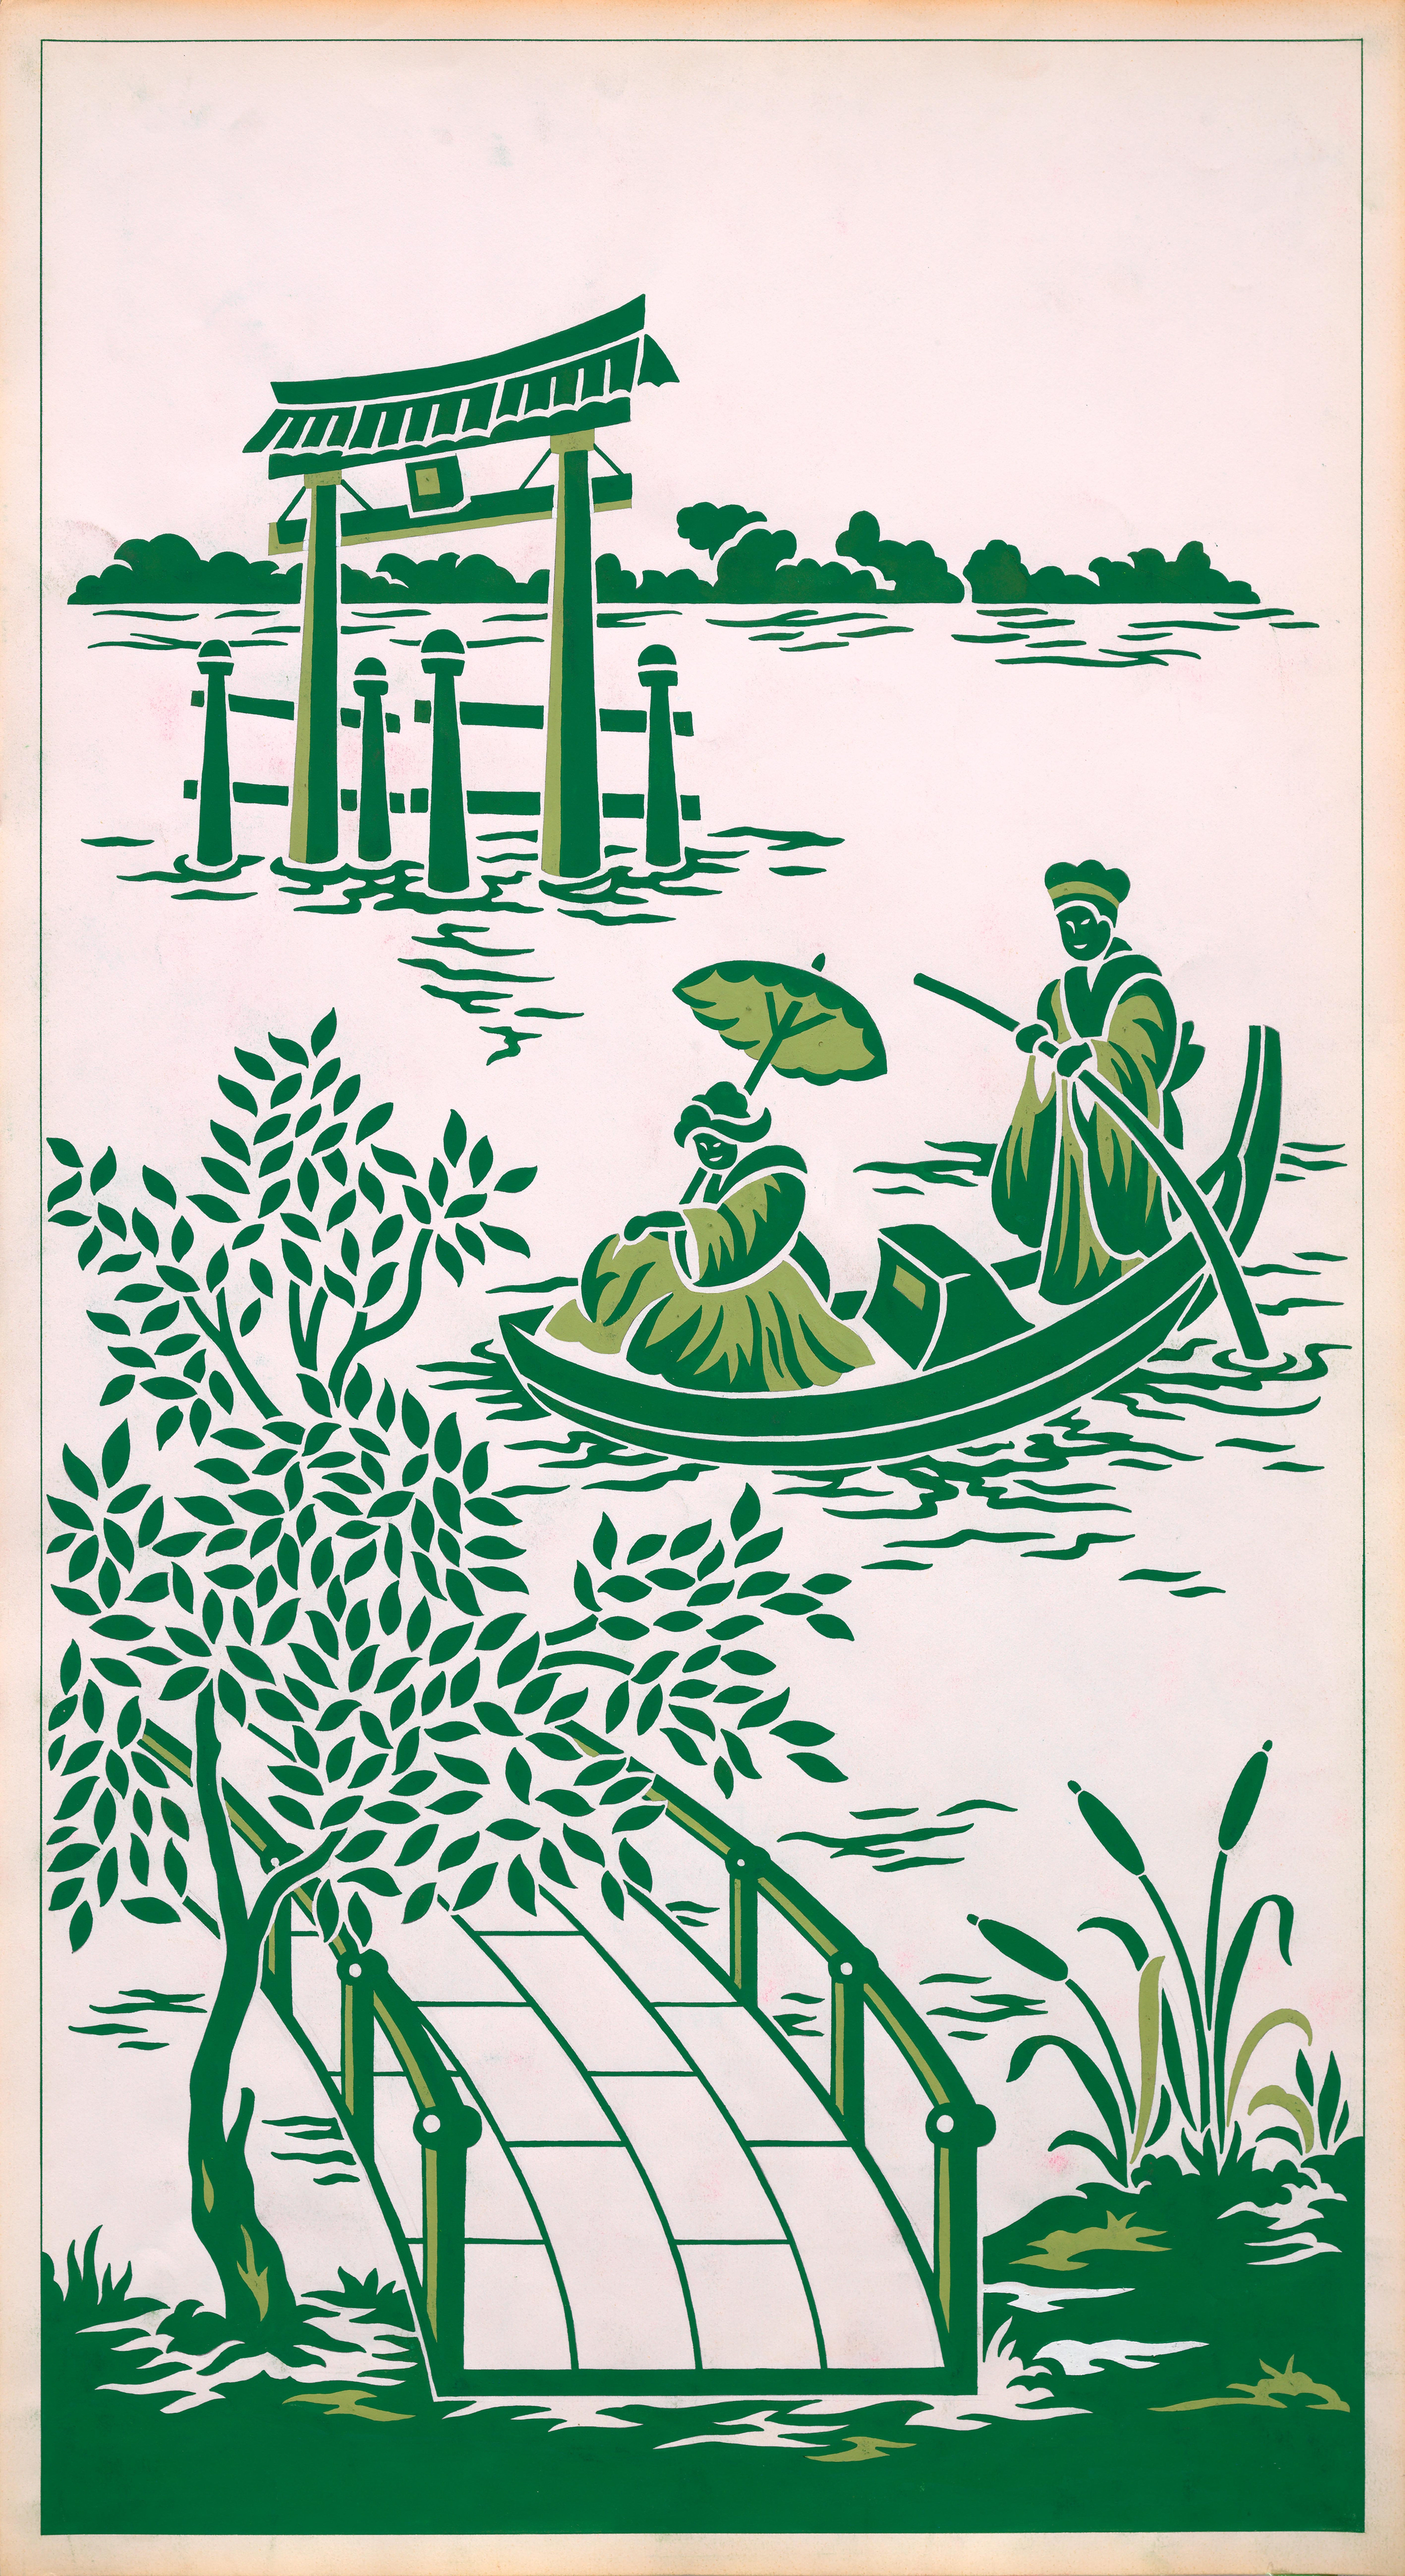 Original handbemaltes Textildesign aus den 70er Jahren mit grünen Gouache-Schirmen auf weißem Papier